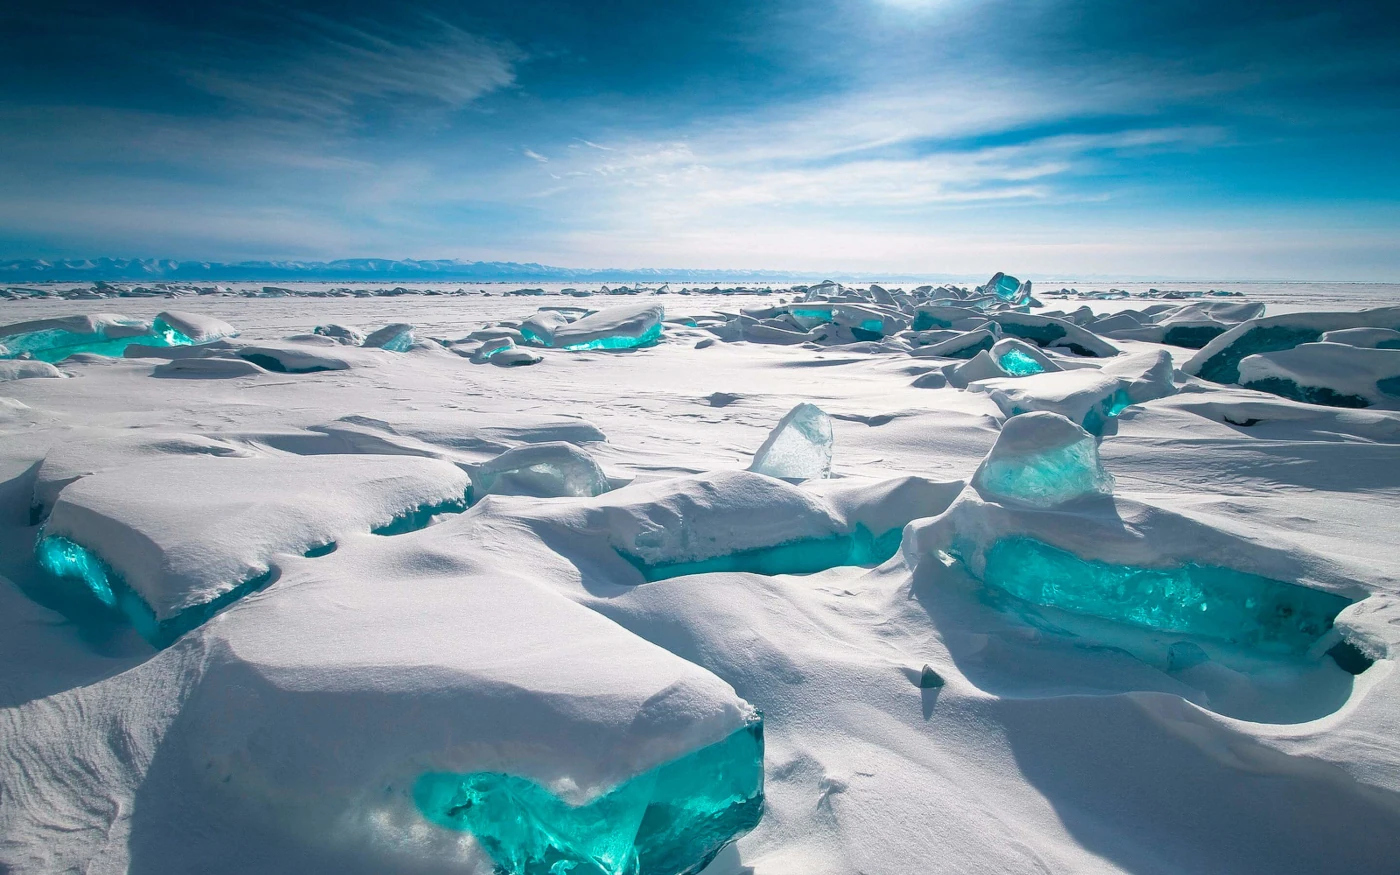 Интересные факты об озере Байкал